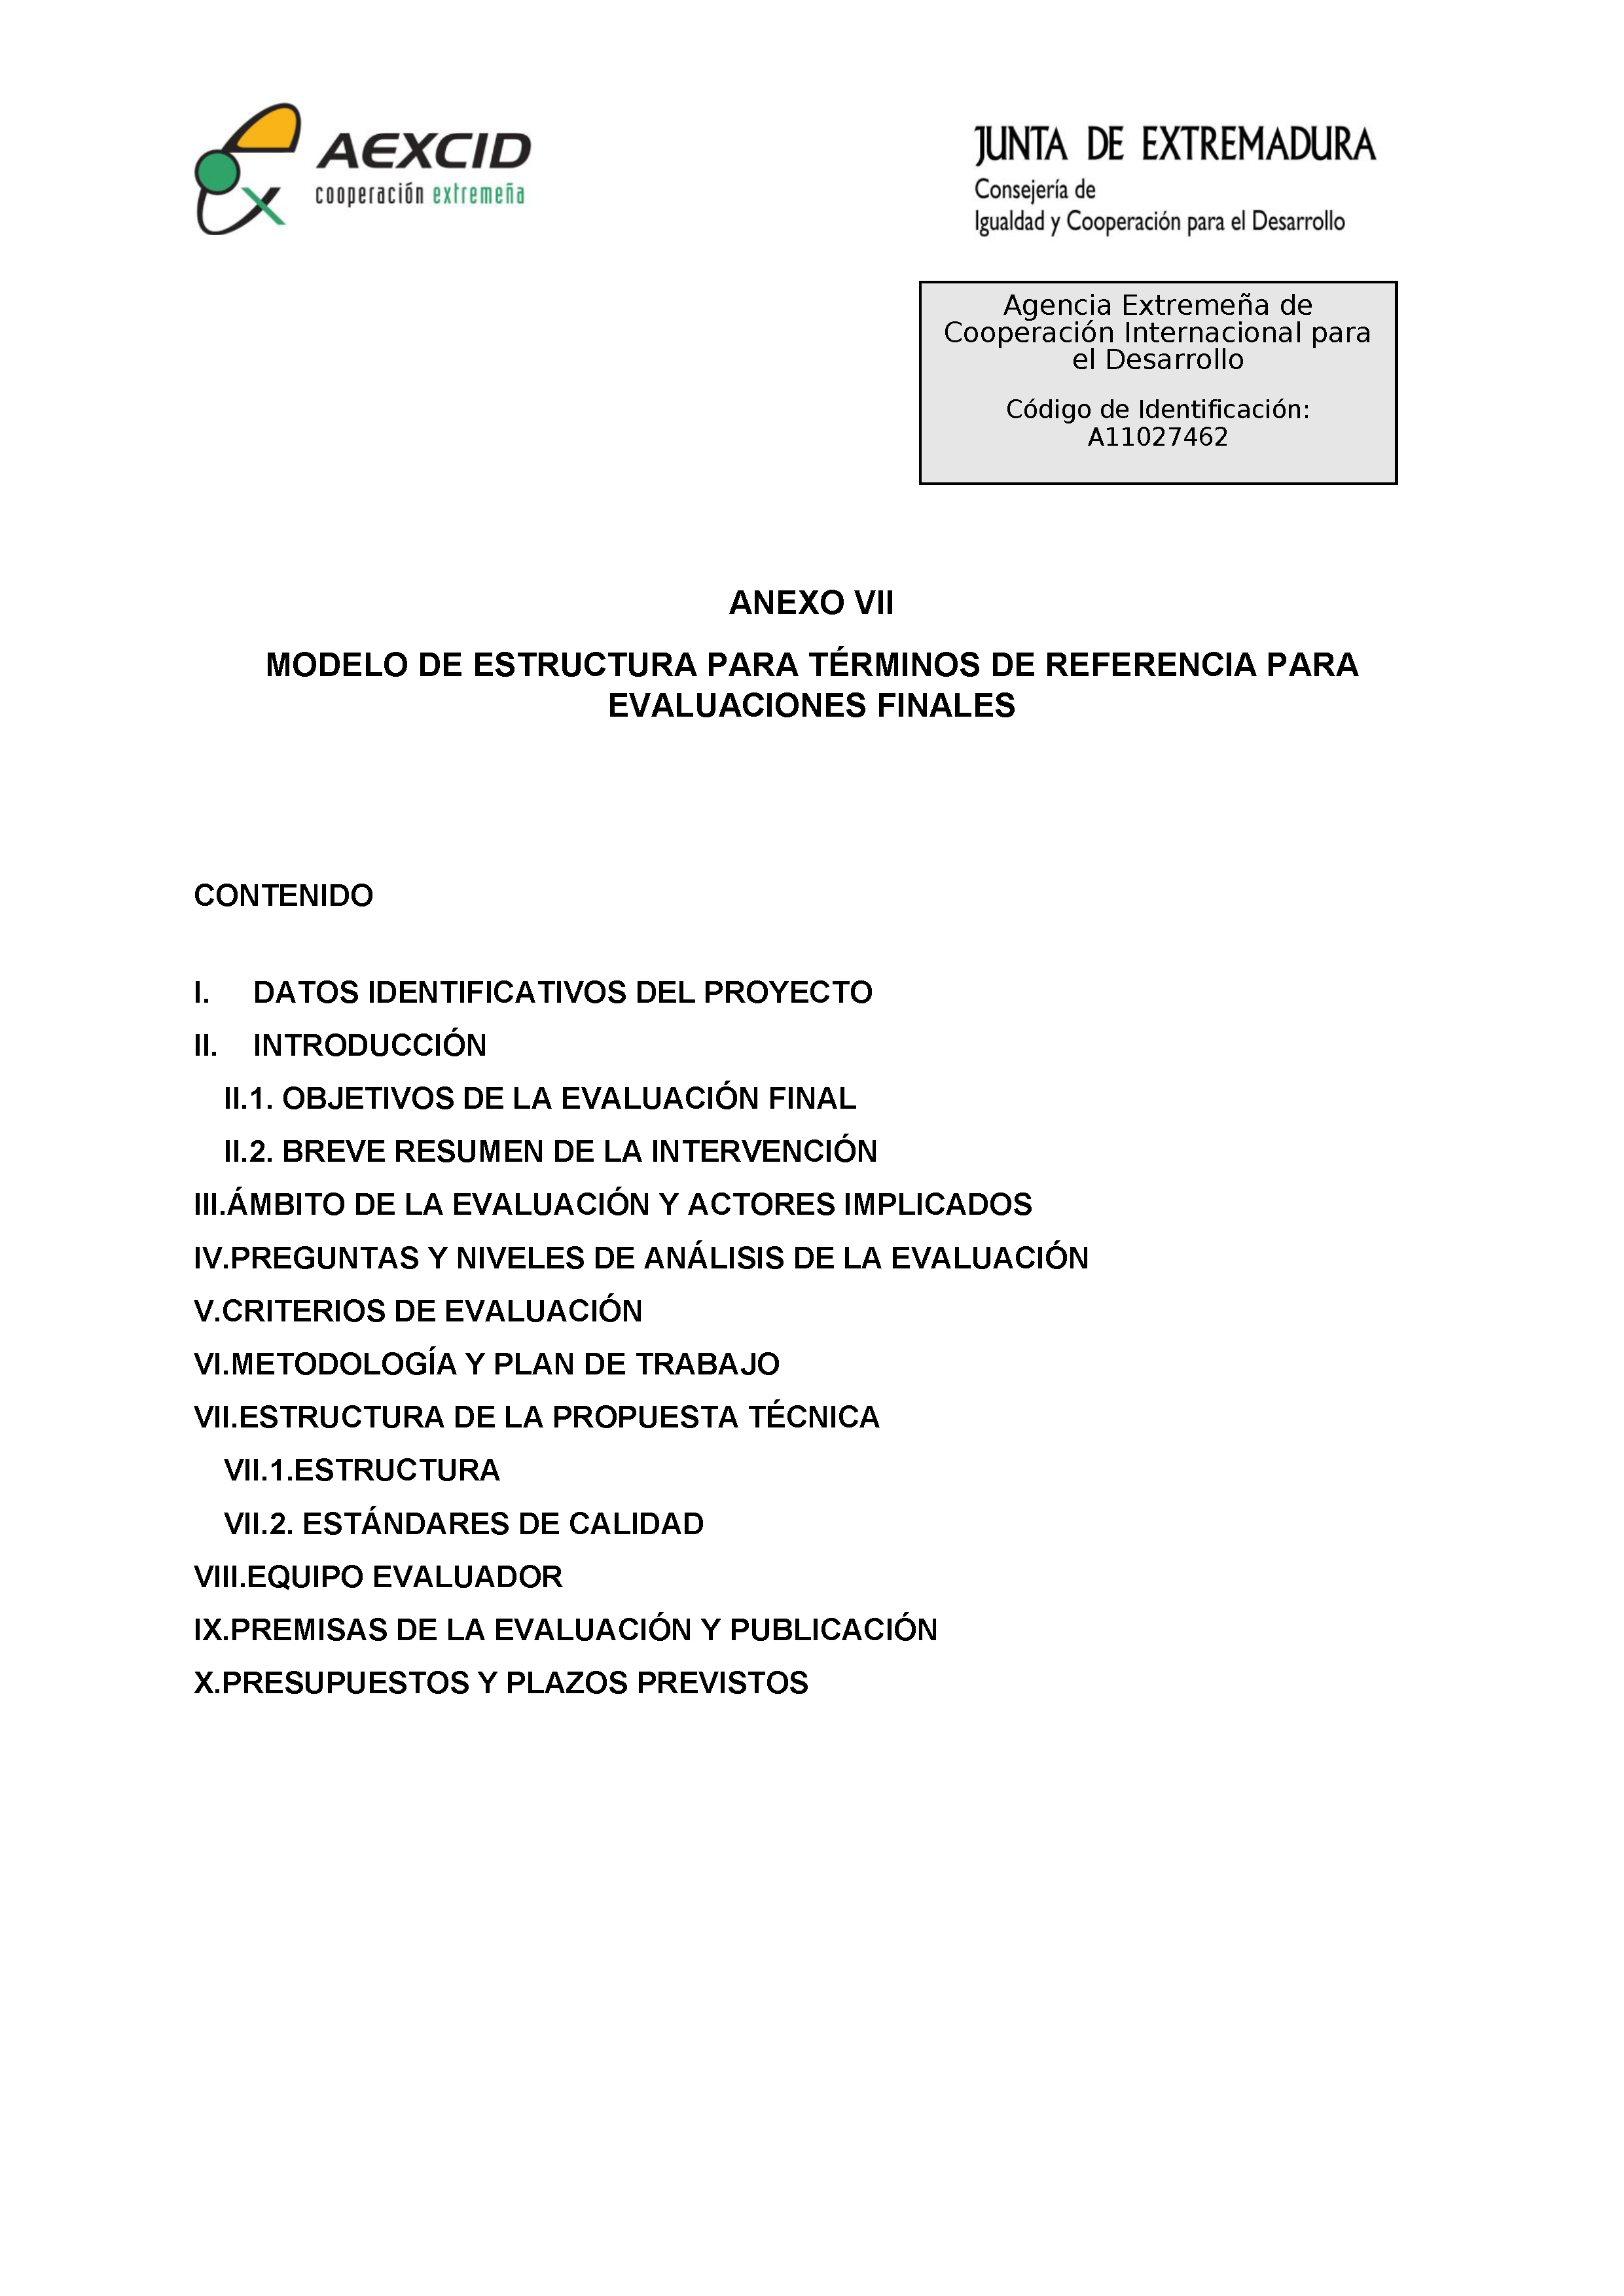 ANEXO VII MODELOS DE ESTRUCTURA PARA TÉRMINOS DE REFERENCIA PARA EVALUACIONES FINALES Pag 1